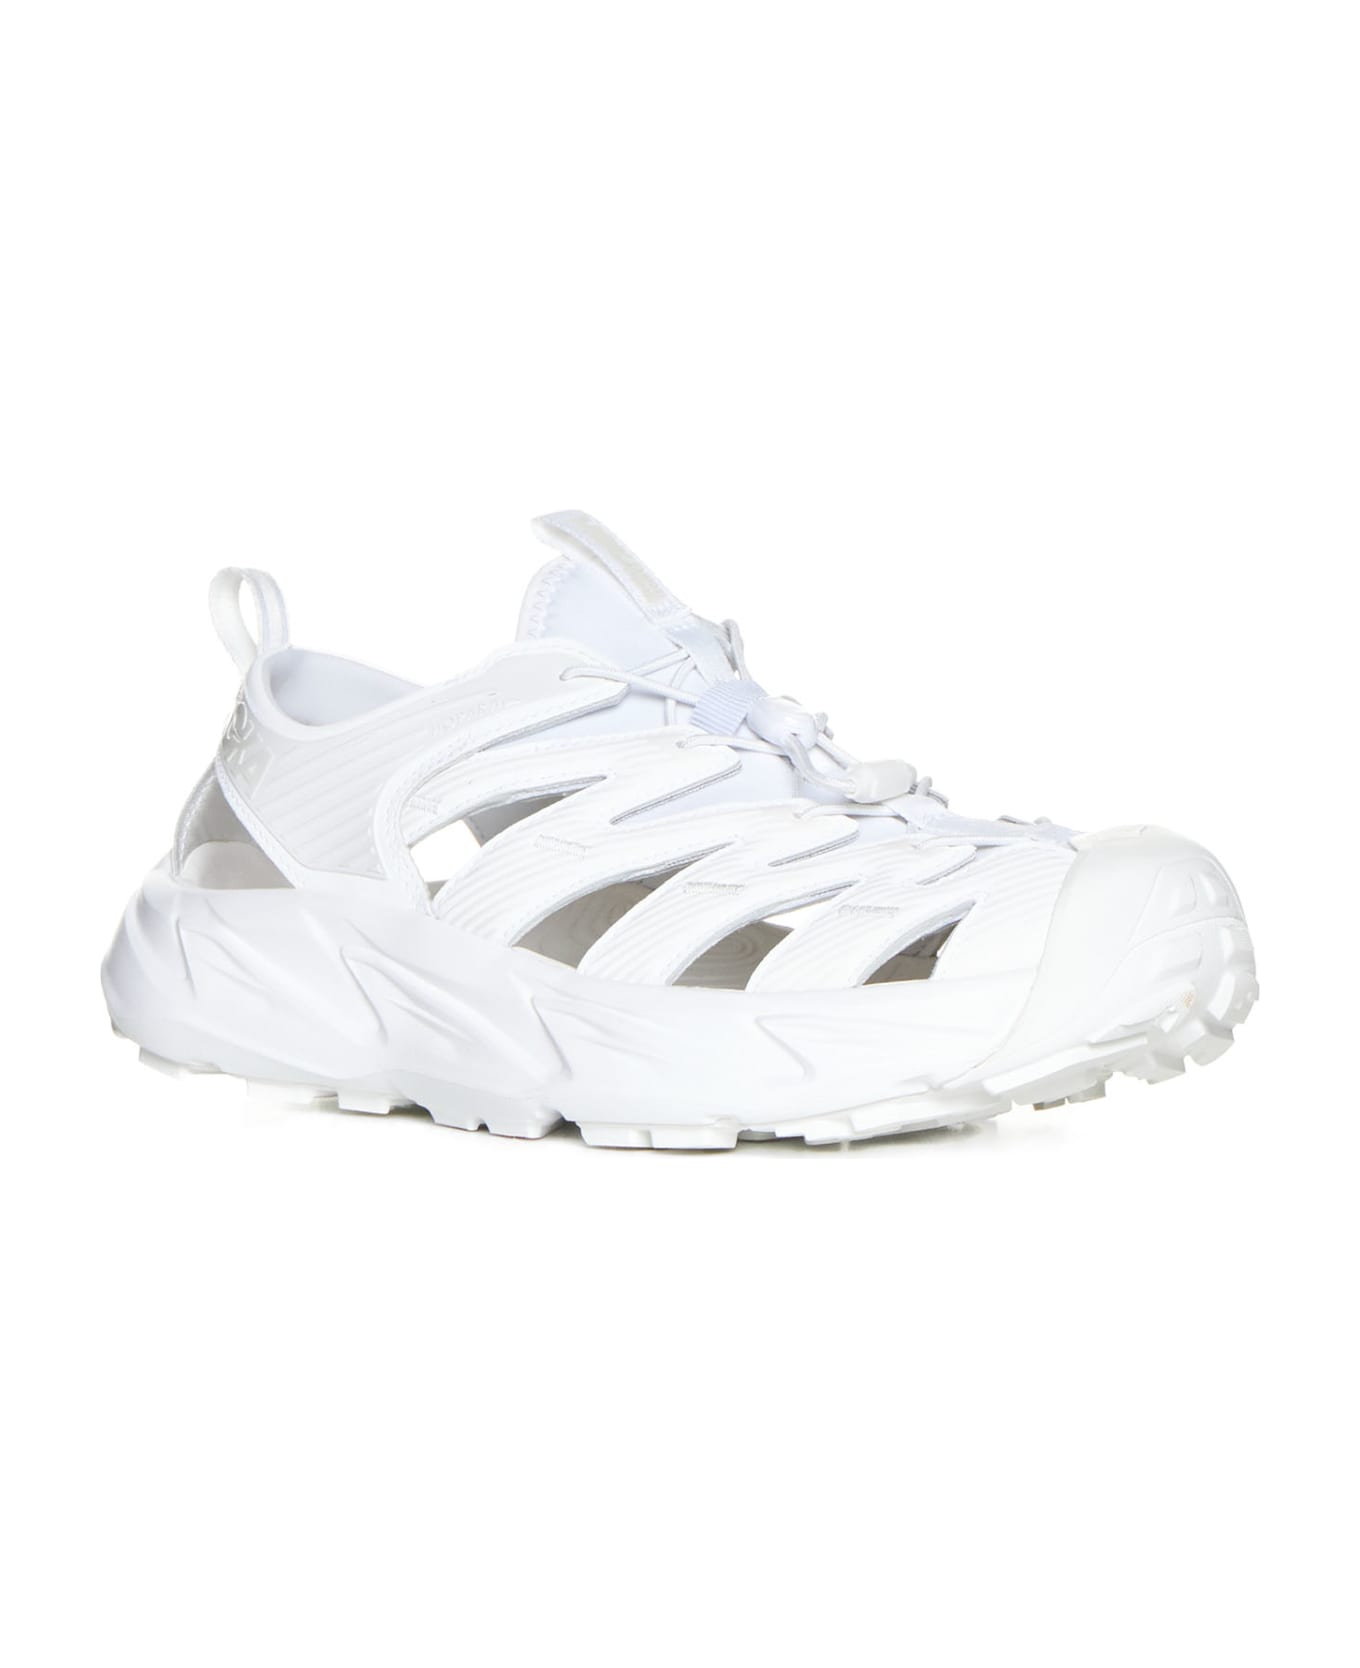 Hoka Sneakers - White